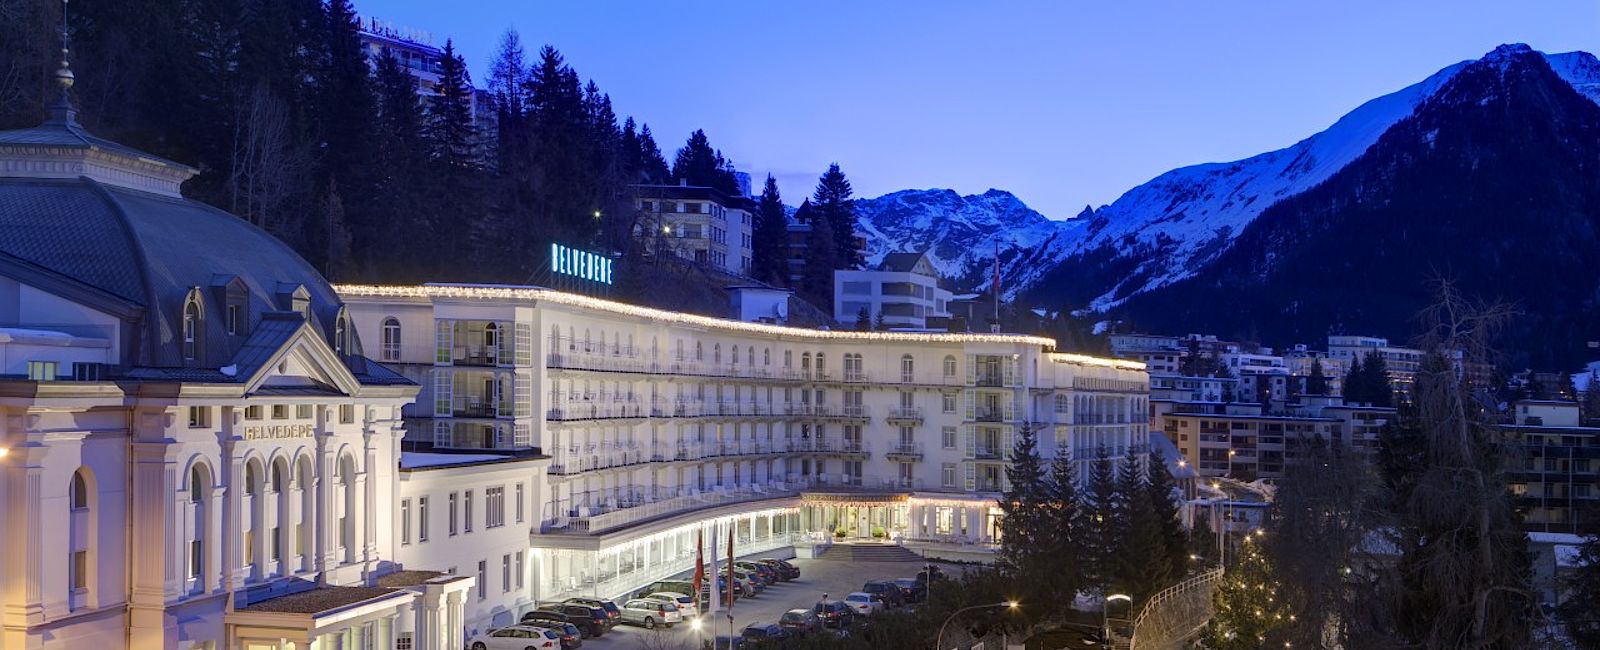 NEWS
 Führungswechsel im Steigenberger Grandhotel Belvédère in Davos 
